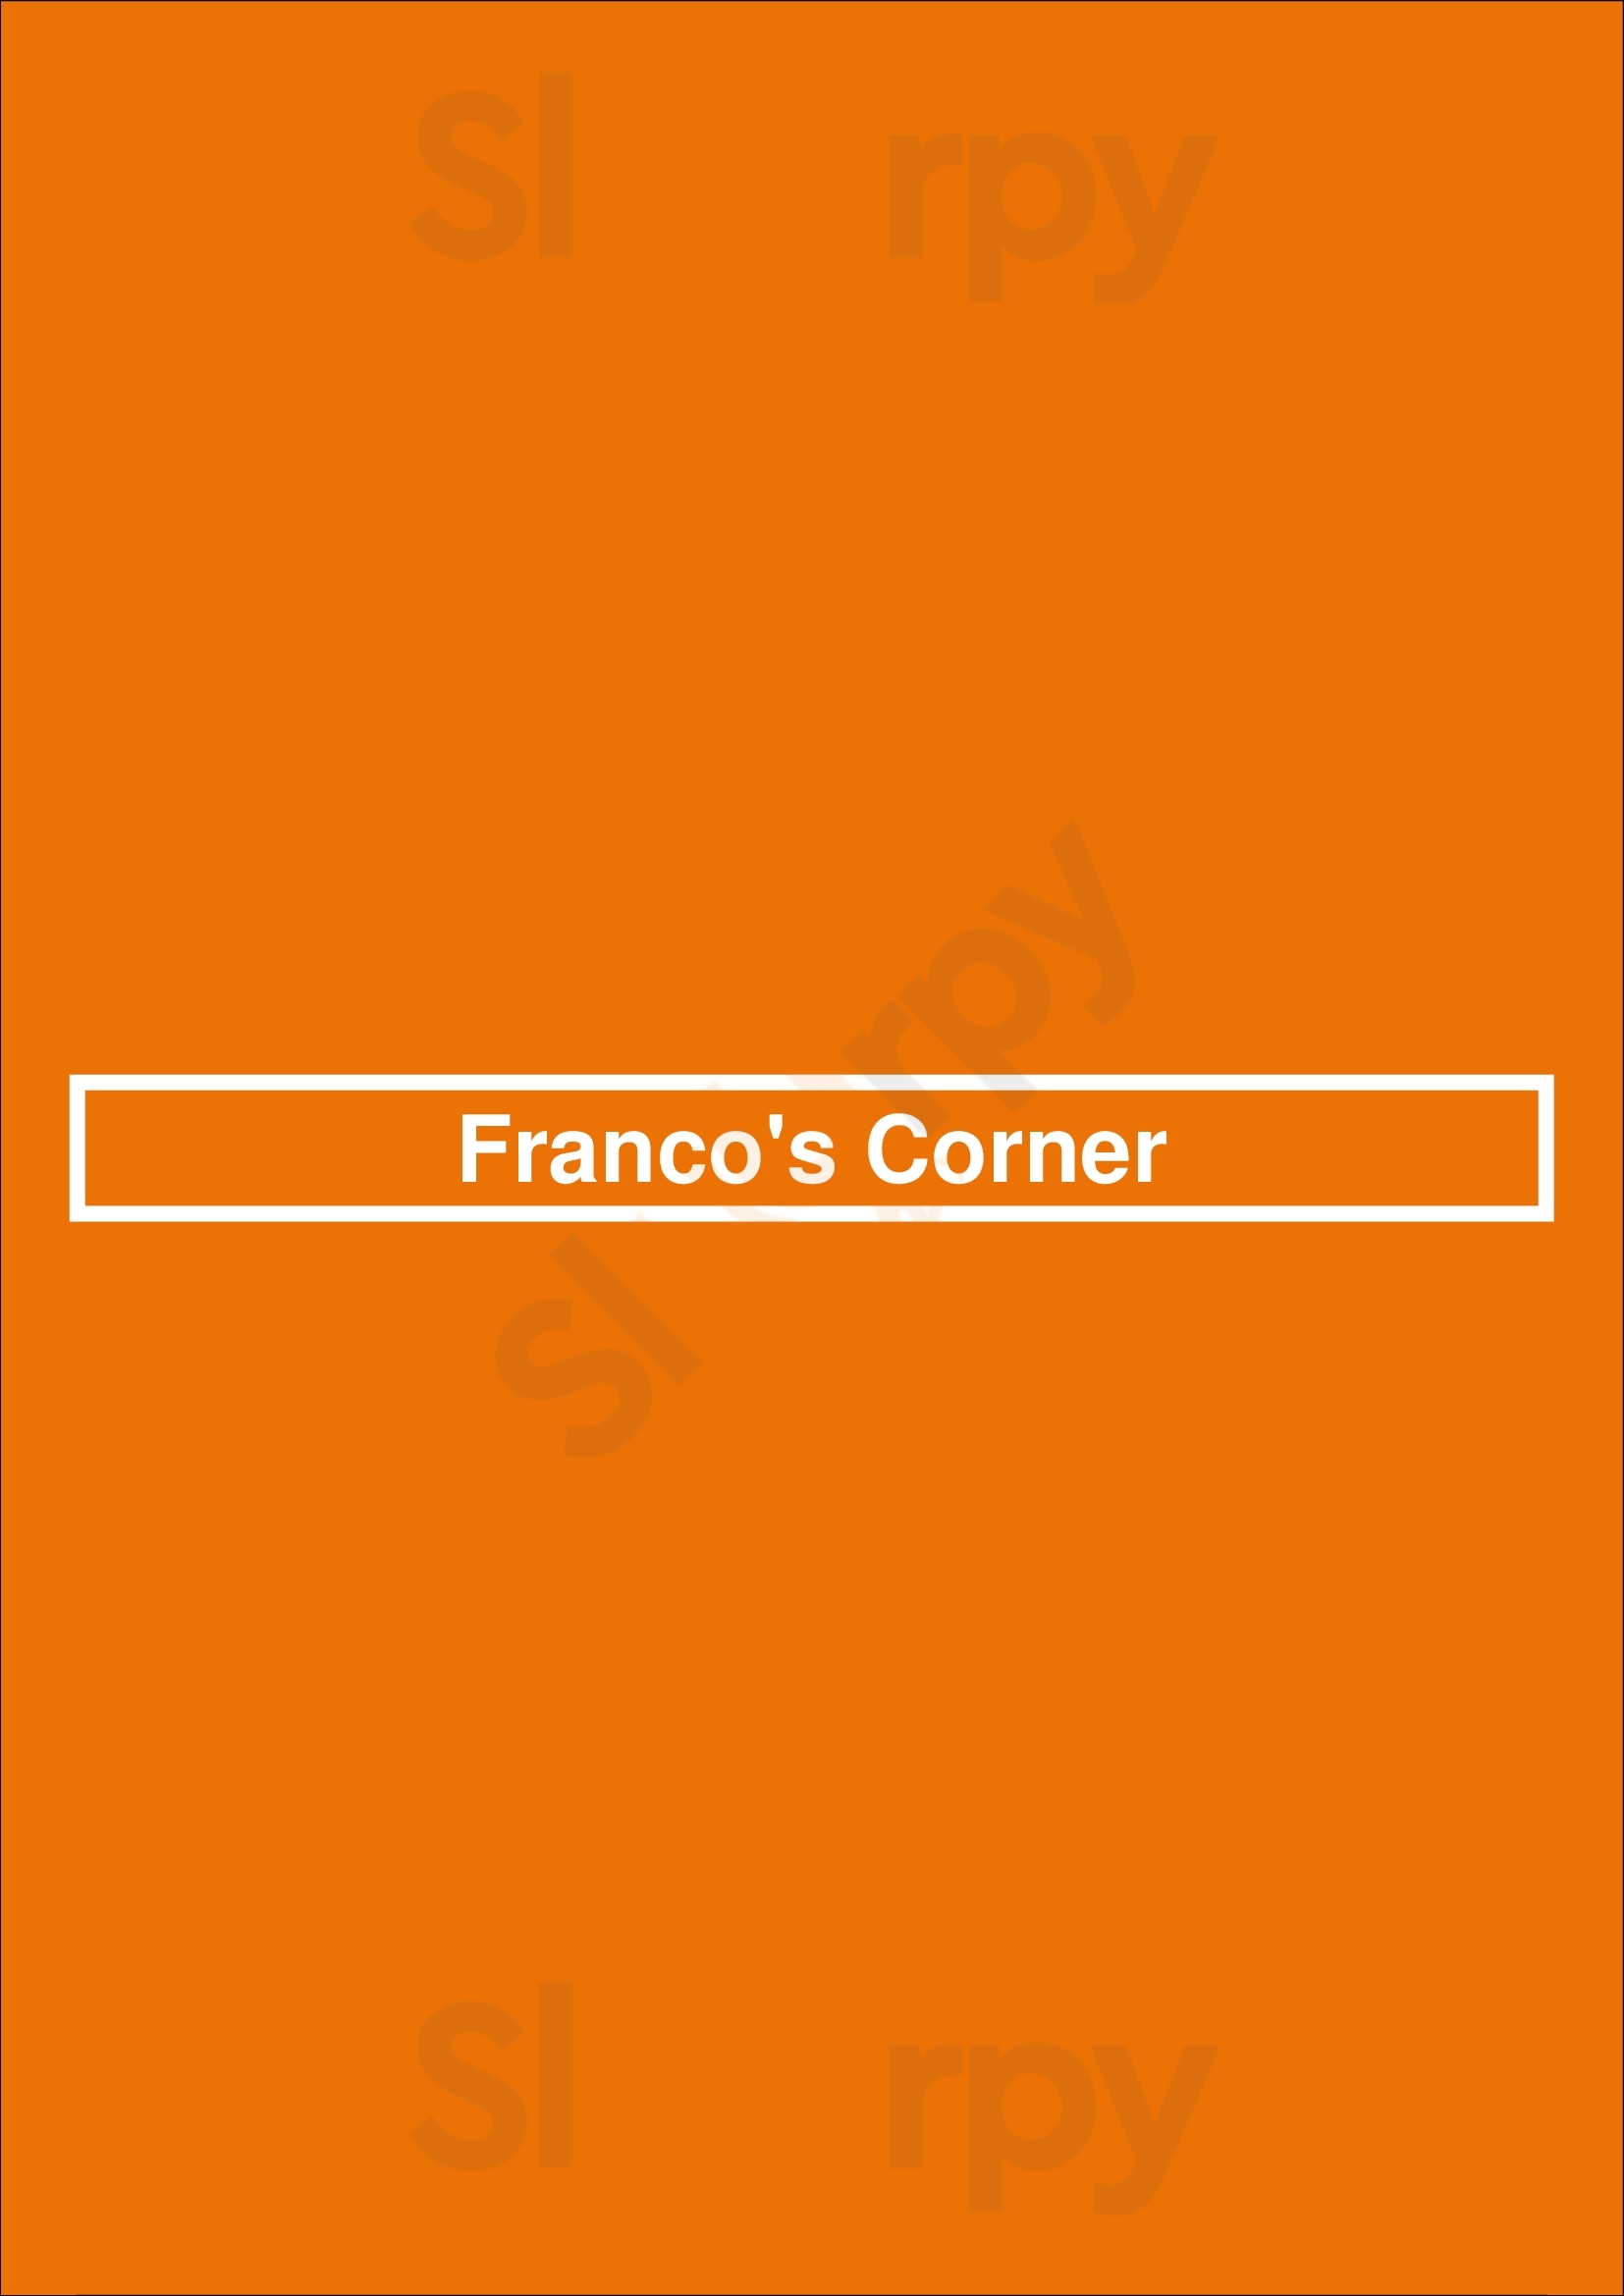 Franco's Corner Funchal Menu - 1